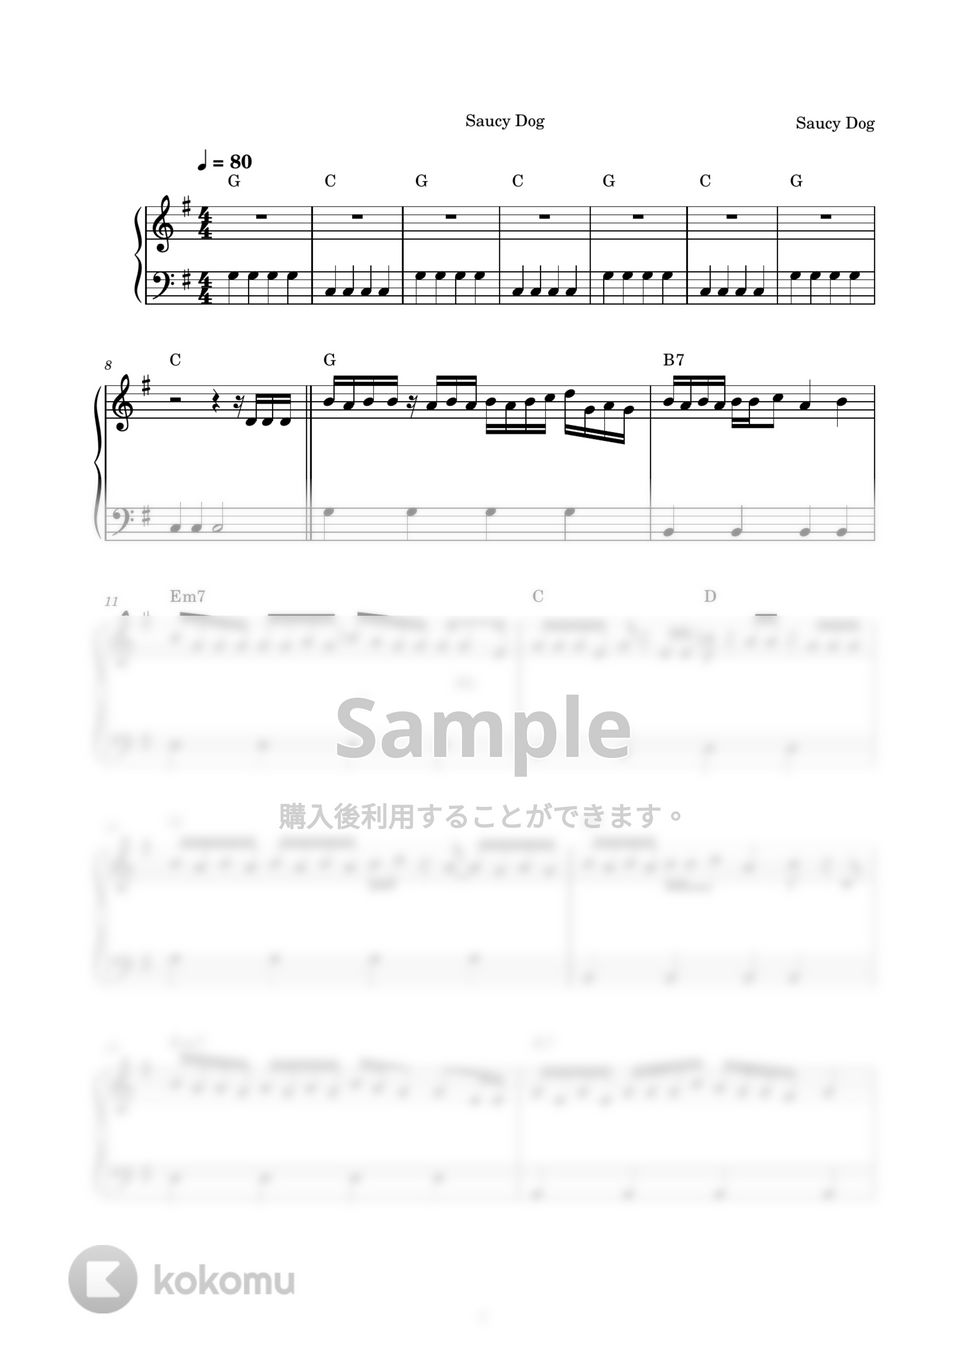 Saucy Dog - いつか (ピアノ楽譜 / かんたん両手 / 歌詞付き / ドレミ付き / 初心者向き) by piano.tokyo